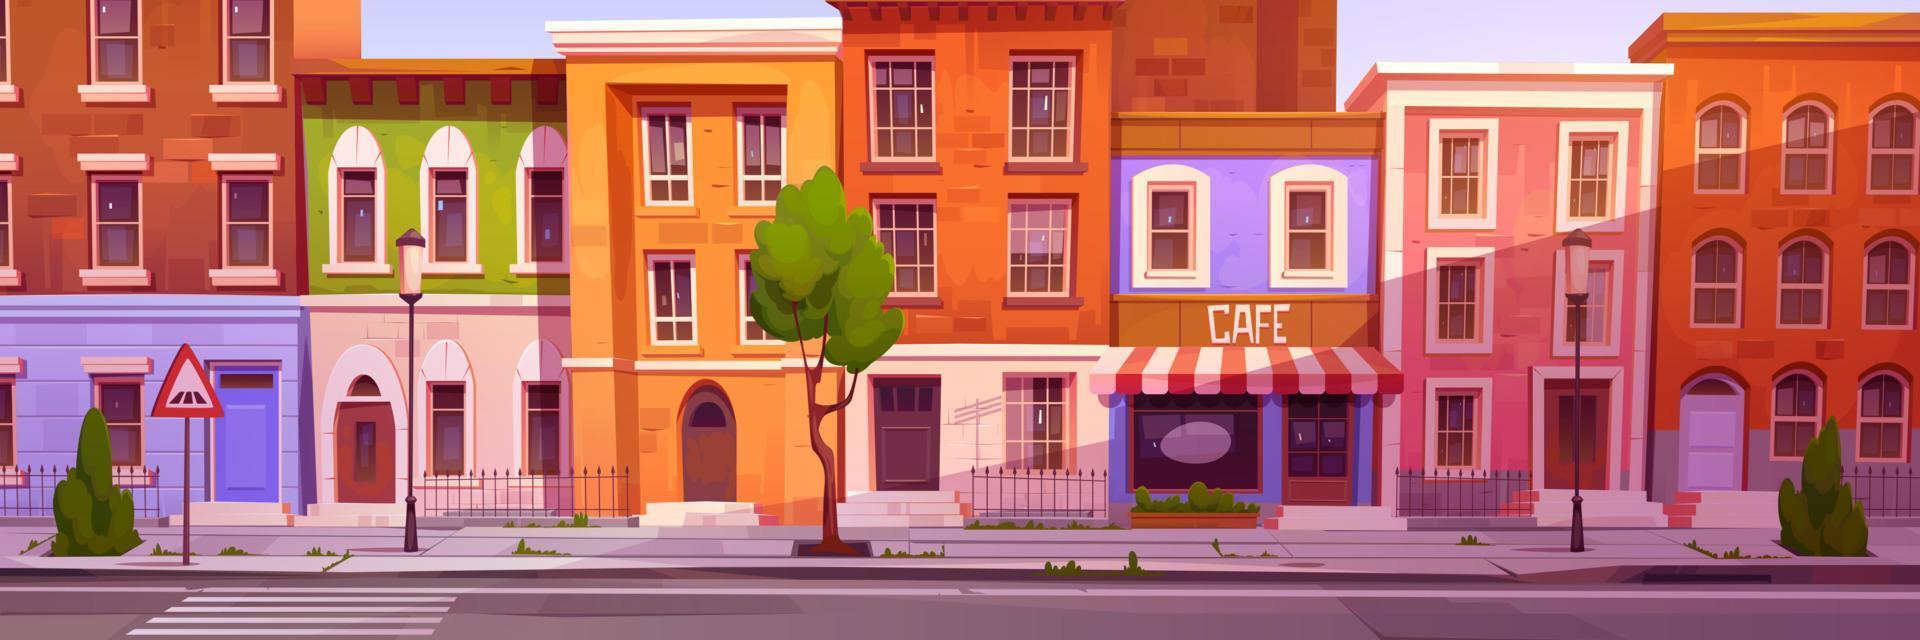 desenho animado cidade rua com agradável casas e cafeteria vetor